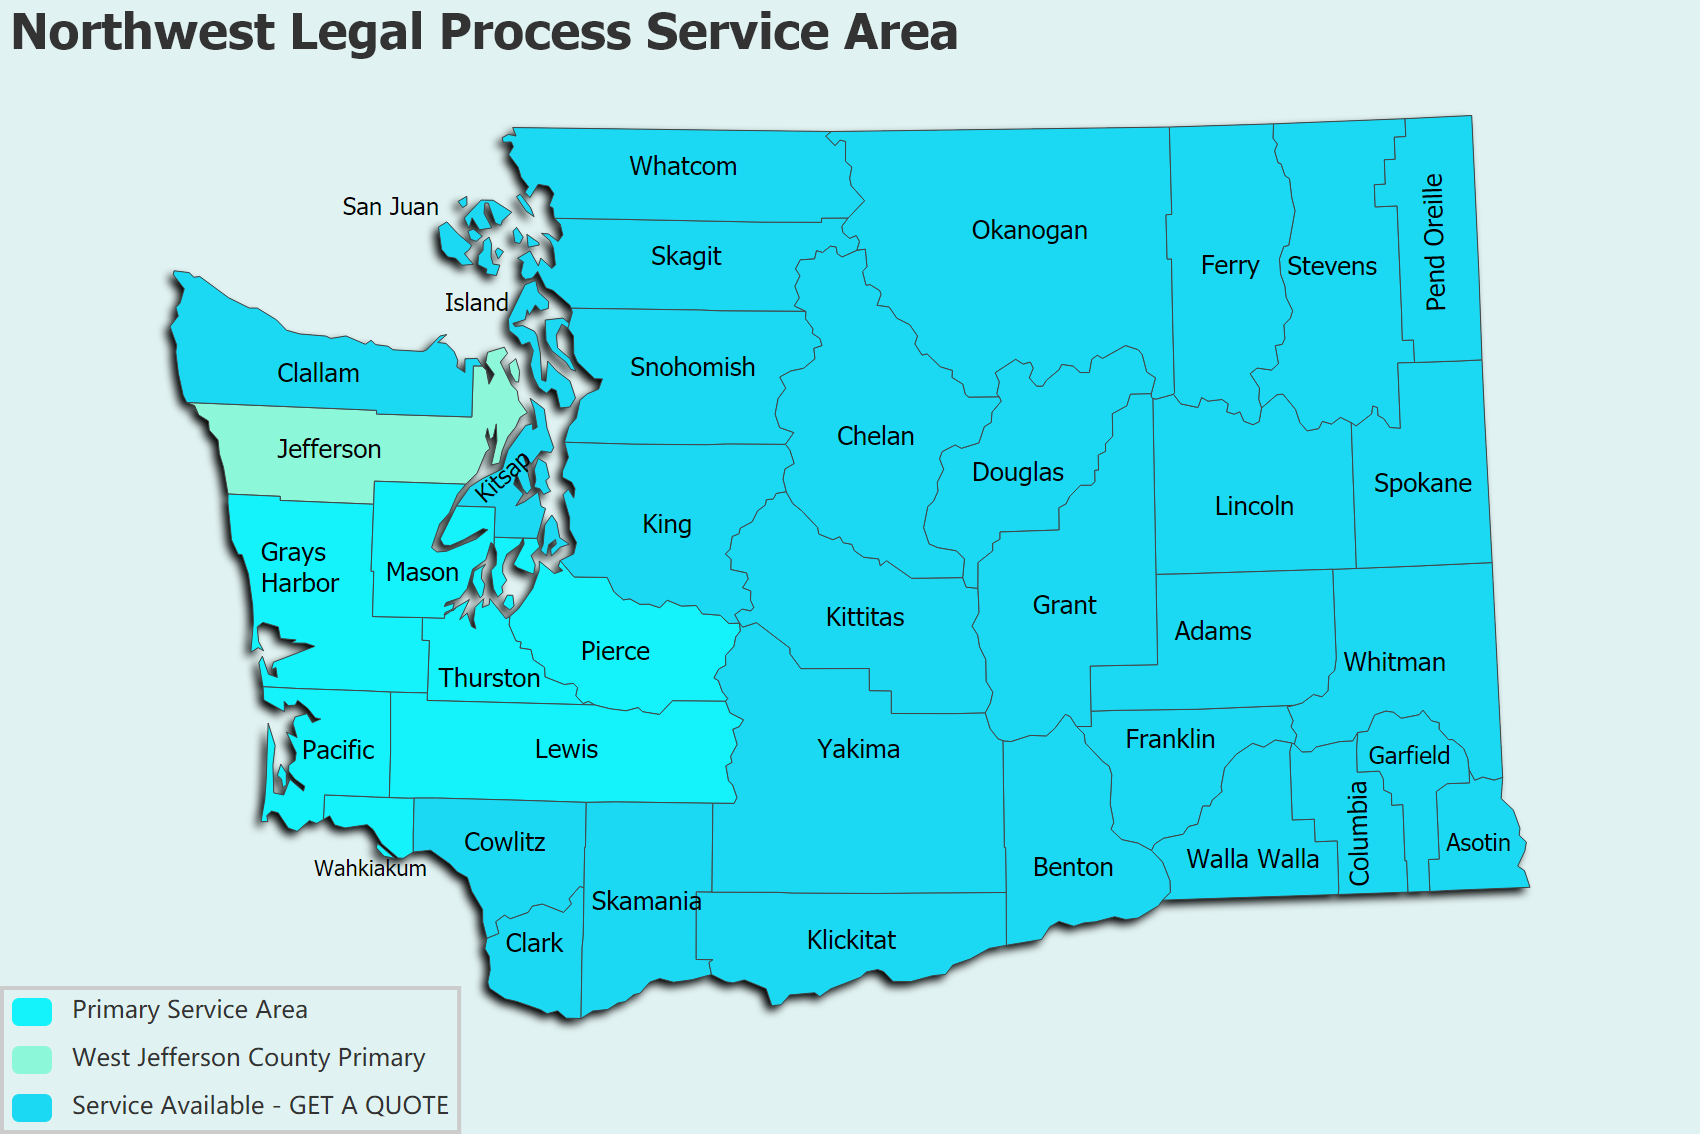 Northwest Legal Process Service Area